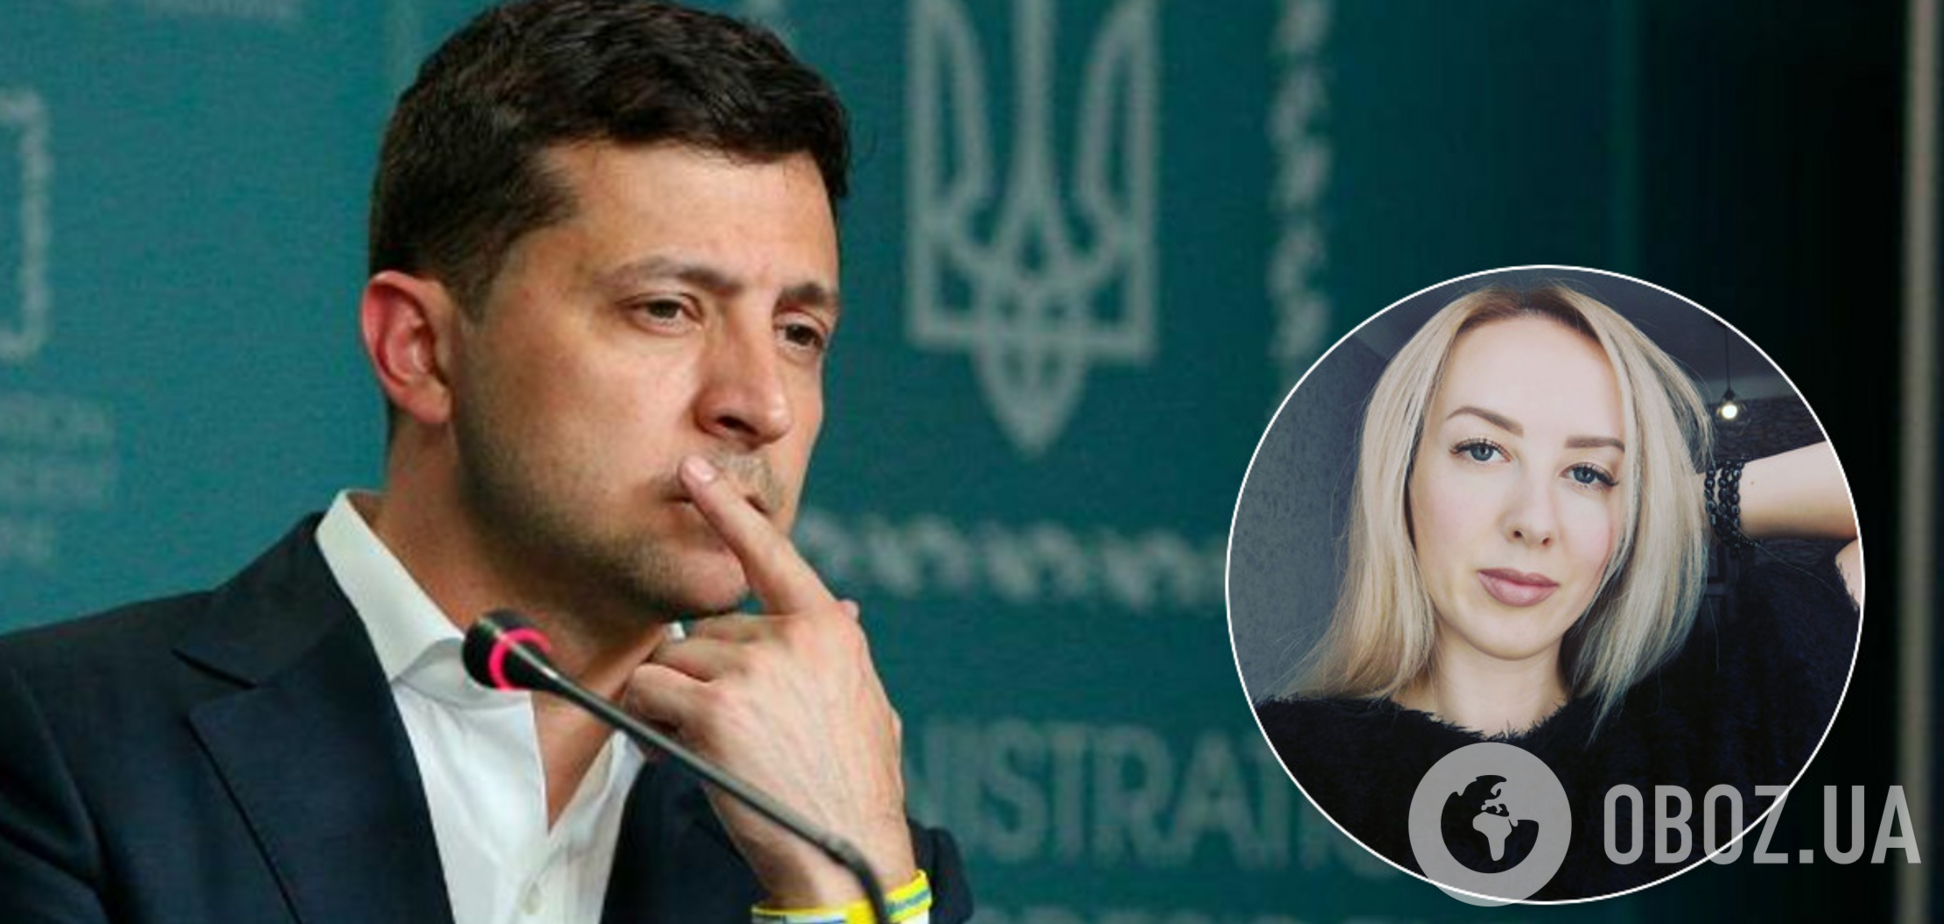 'Как подачка перед Пасхой!' Киевский нейрохирург раскрыла детали скандала с 1500 грн зарплаты